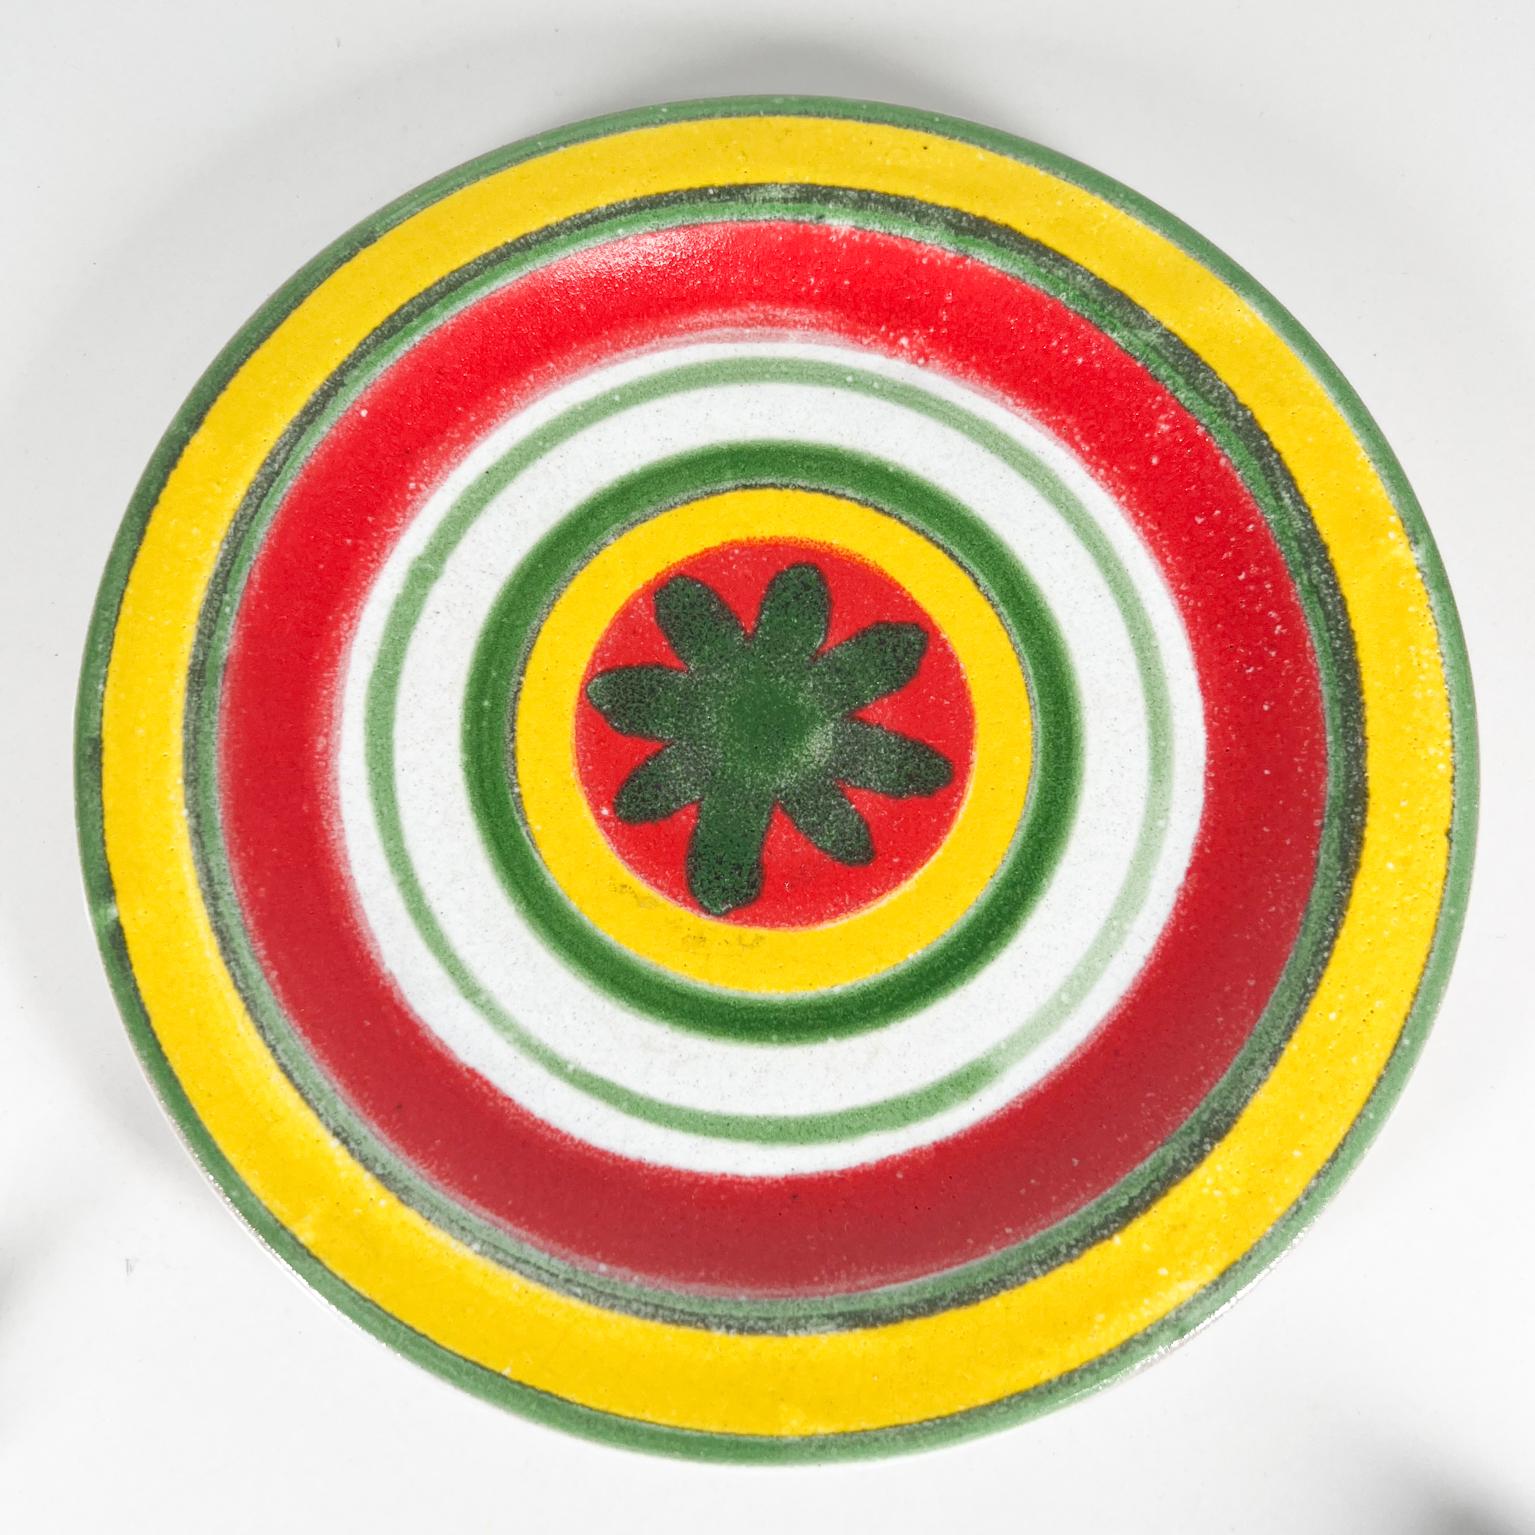 1960s Desimone Ceramic Pottery Italy Art Plate
Peint à la main en jaune, rouge et vert 
Giovanni Desimone Italie
8,38 de diamètre x 0,75 de hauteur
Inscription : DeSimone Italie 64/15 AC
État vintage d'origine.
Reportez-vous aux images.
Nous en